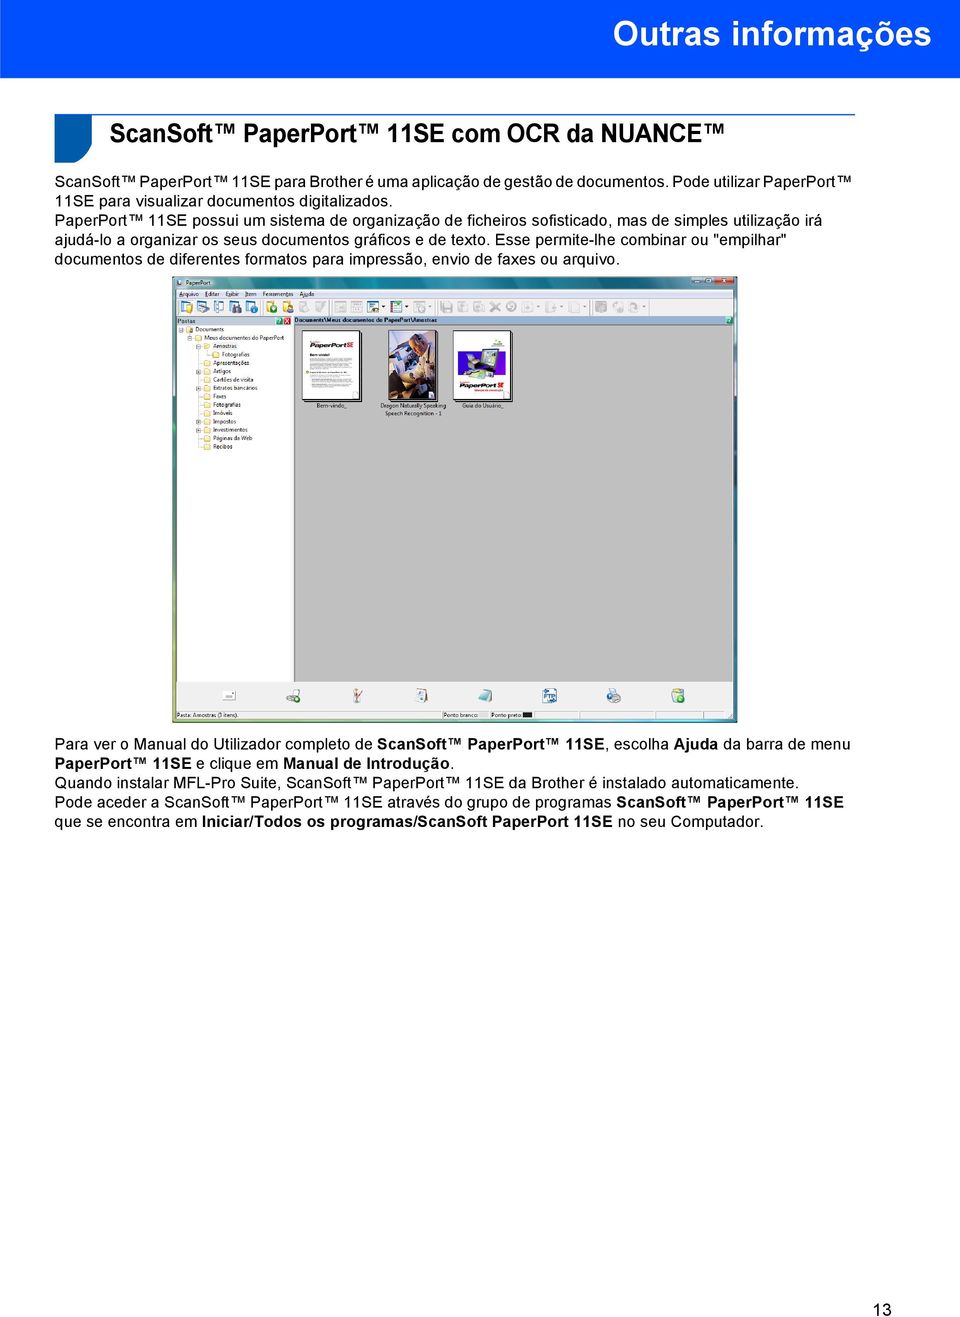 PaperPort 11SE possui um sistema de organização de ficheiros sofisticado, mas de simples utilização irá ajudá-lo a organizar os seus documentos gráficos e de texto.